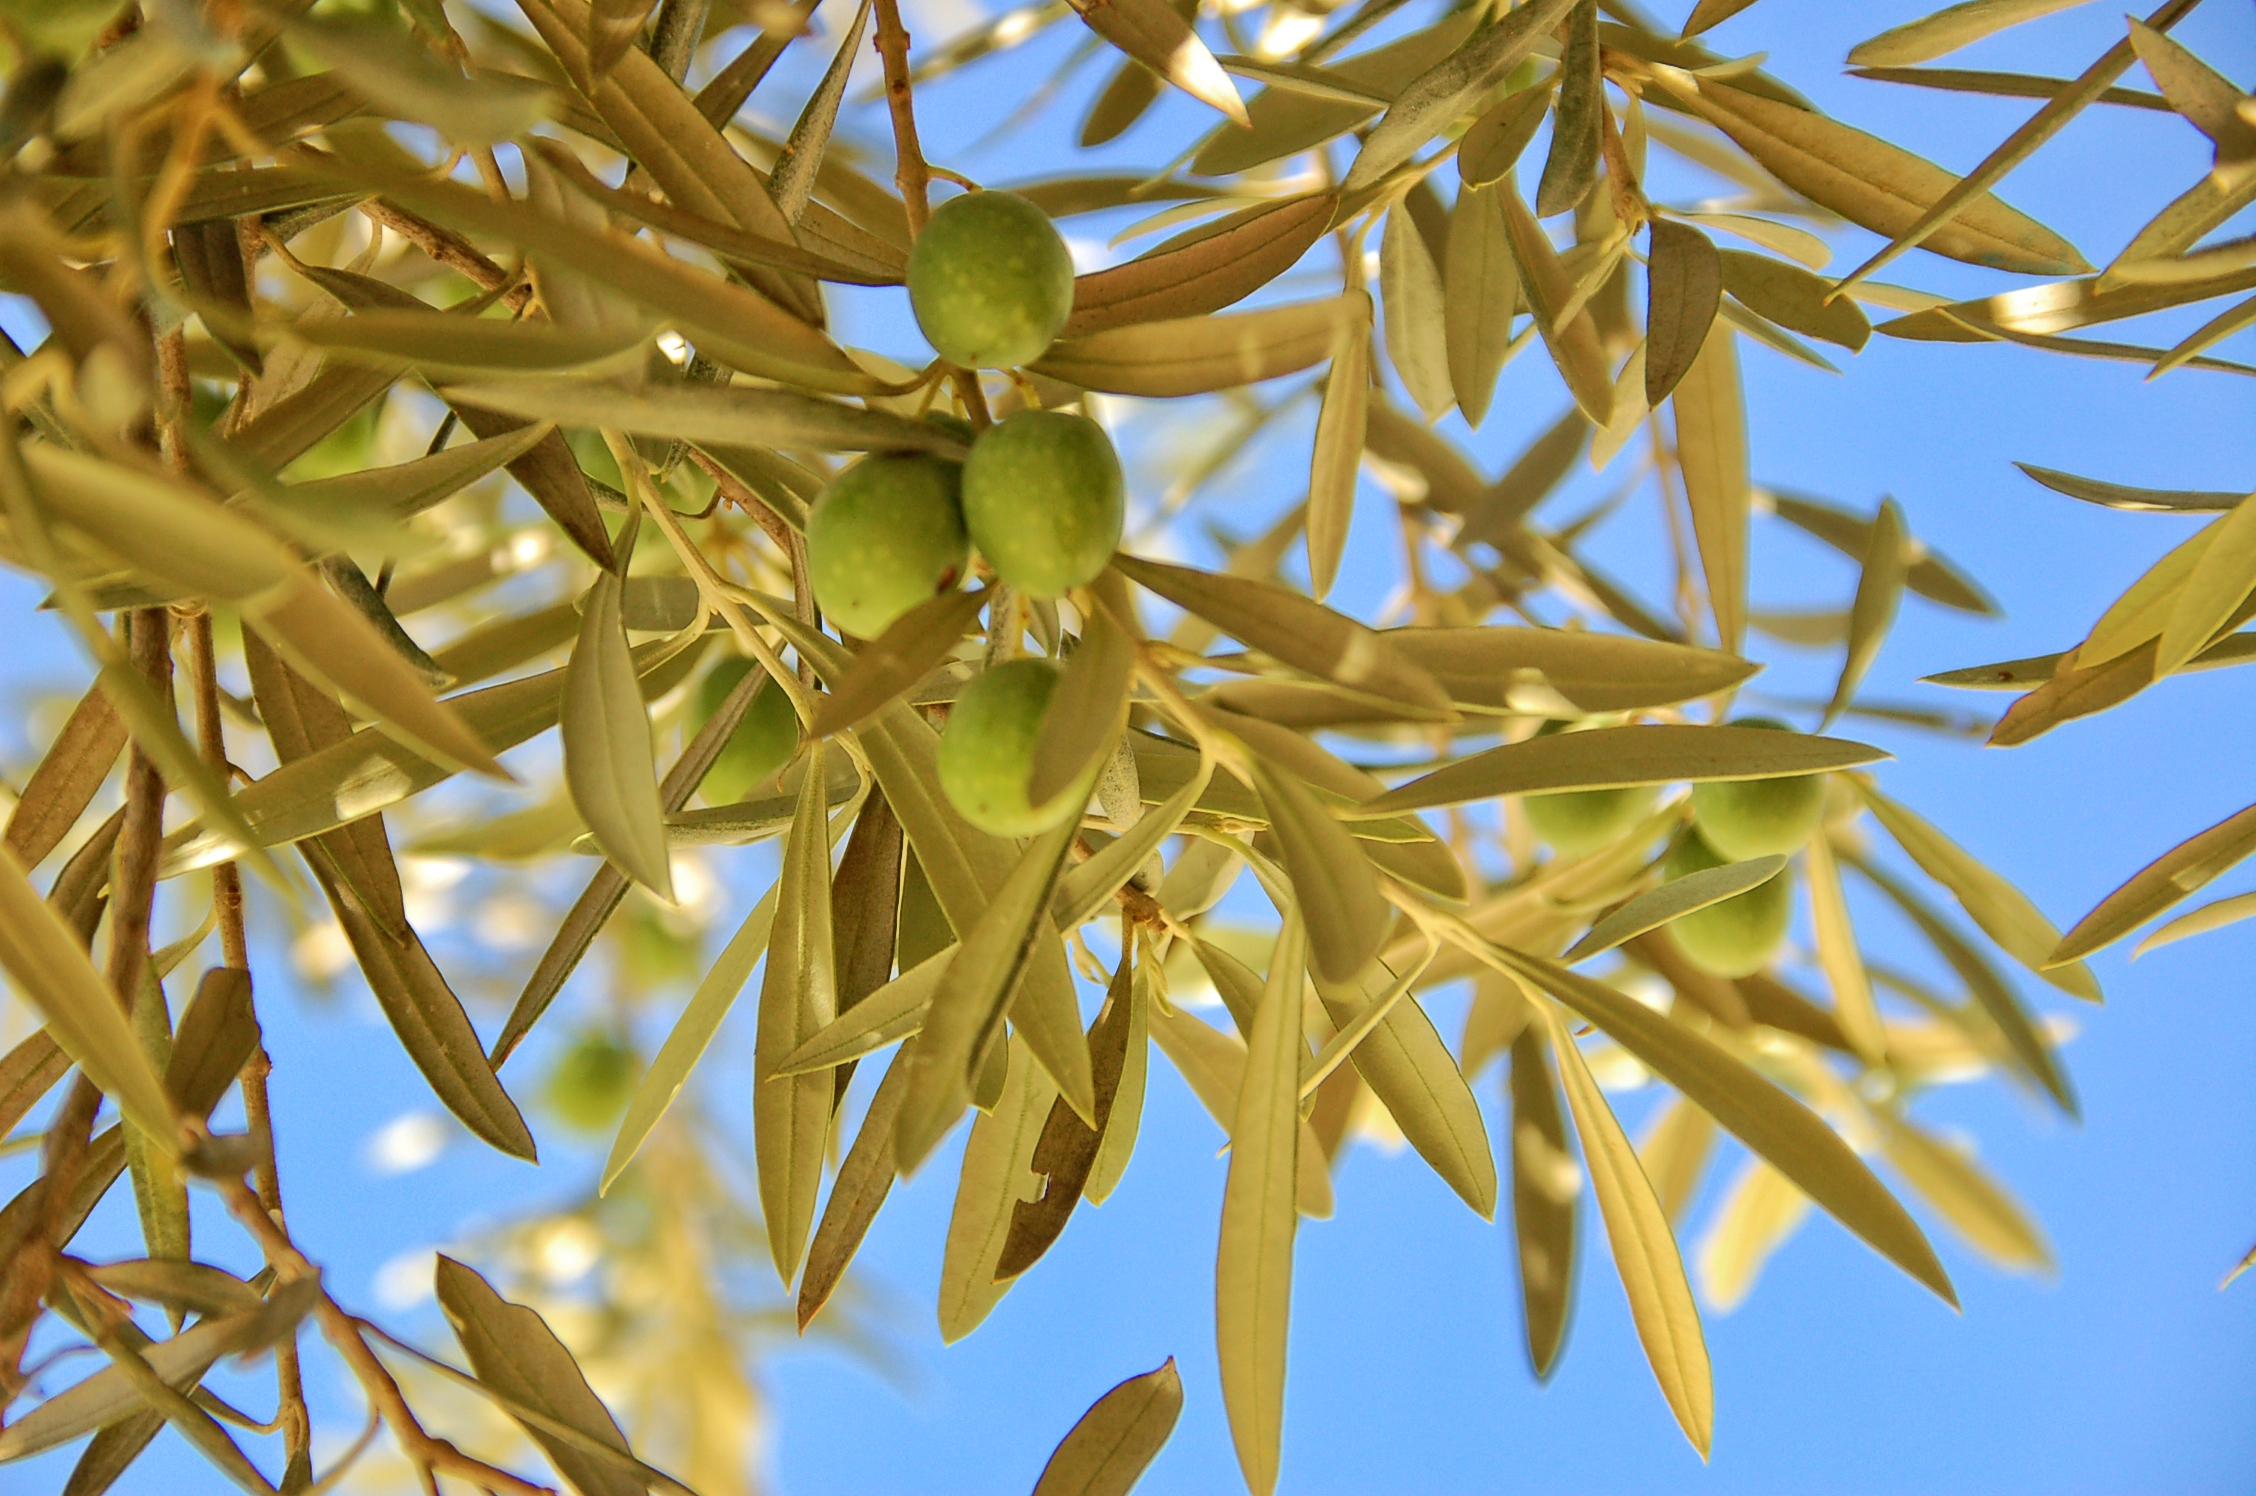 Olive groves, Iznajar, La Celada, Andalucia